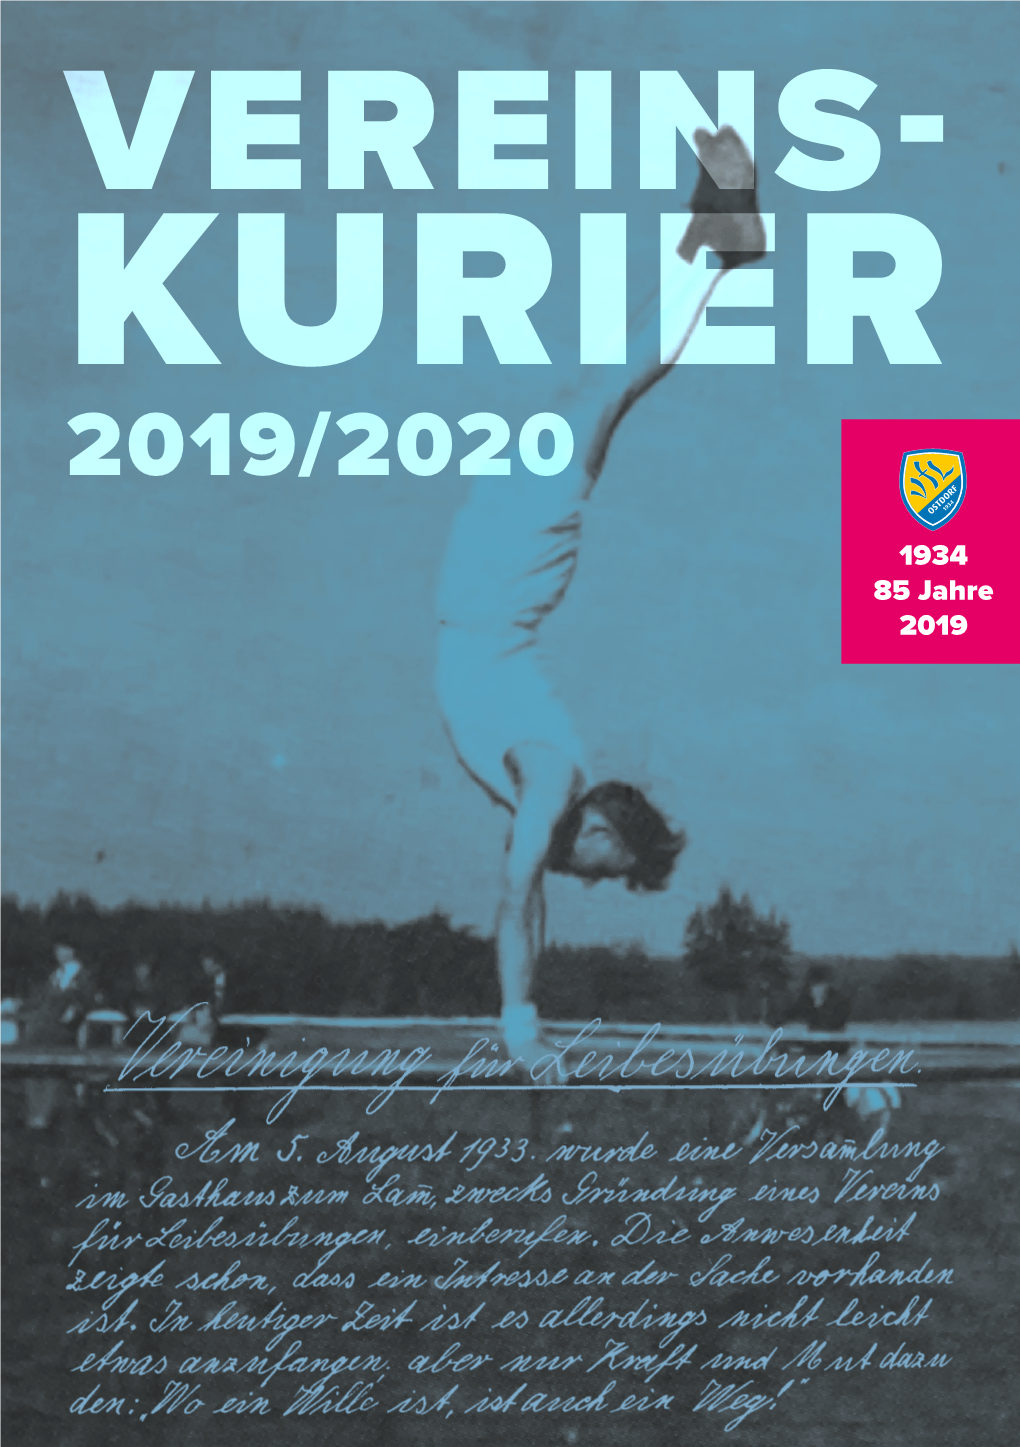 Der Vereinskurier 2019/2020 Ist Nun Auch Online Verfügbar. Zum Lesen Klicken!